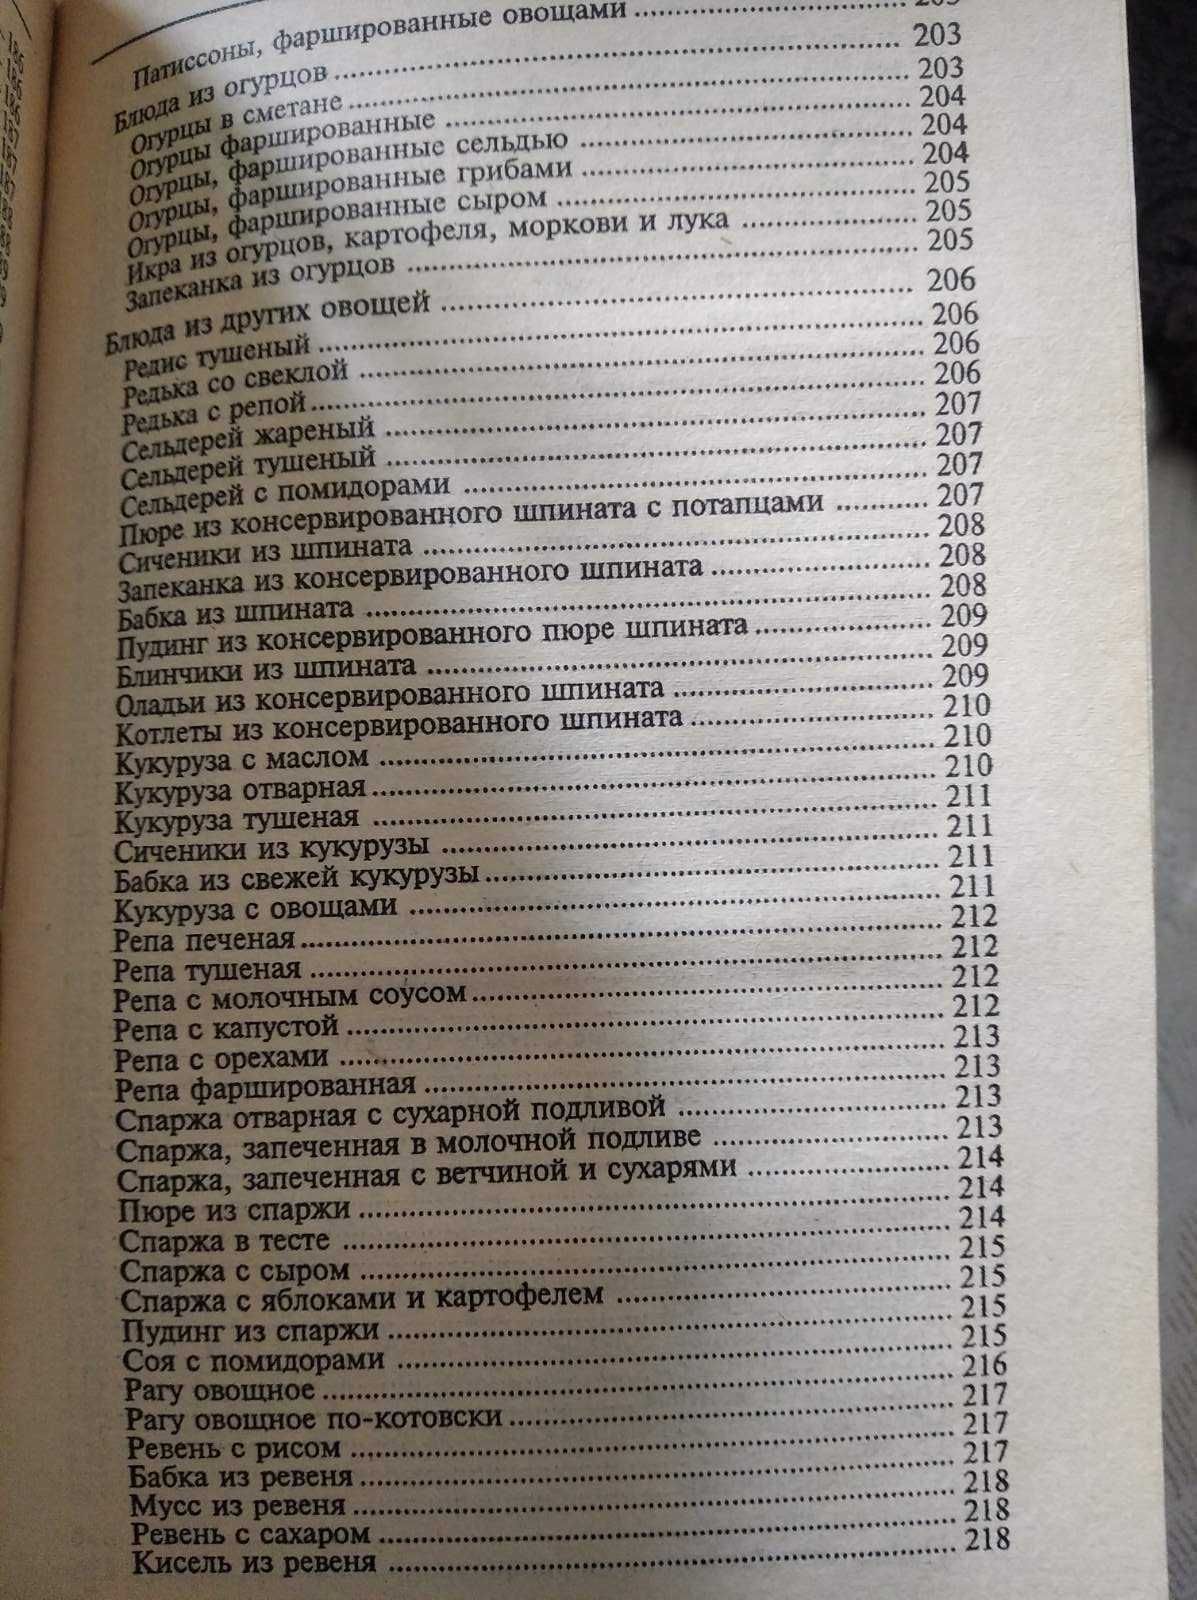 Книга рецептов Блюда из овощей грибов фруктов украинская кухня